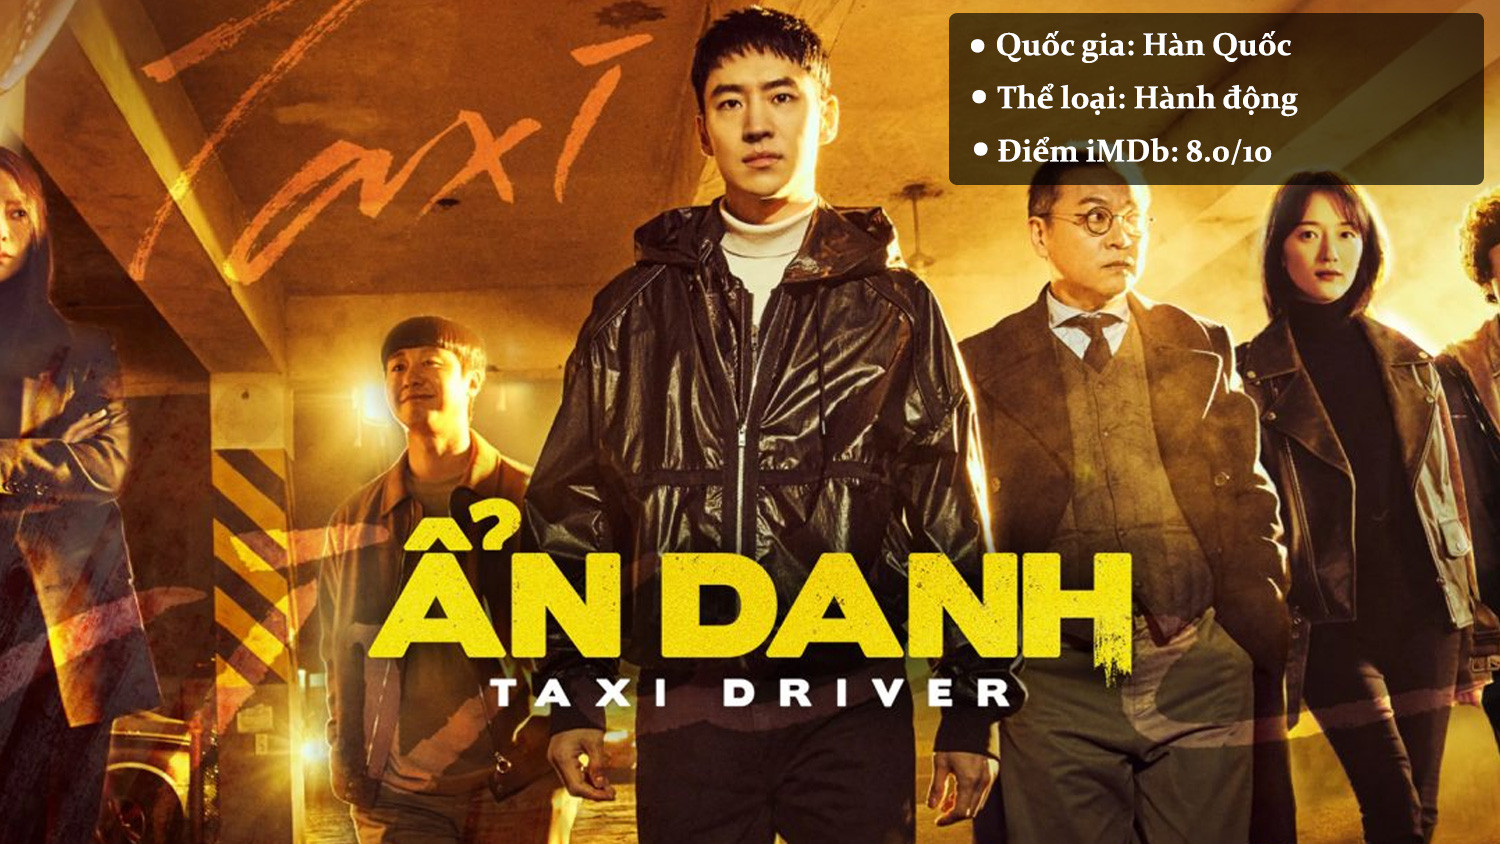 Taxi Driver - Ẩn Danh